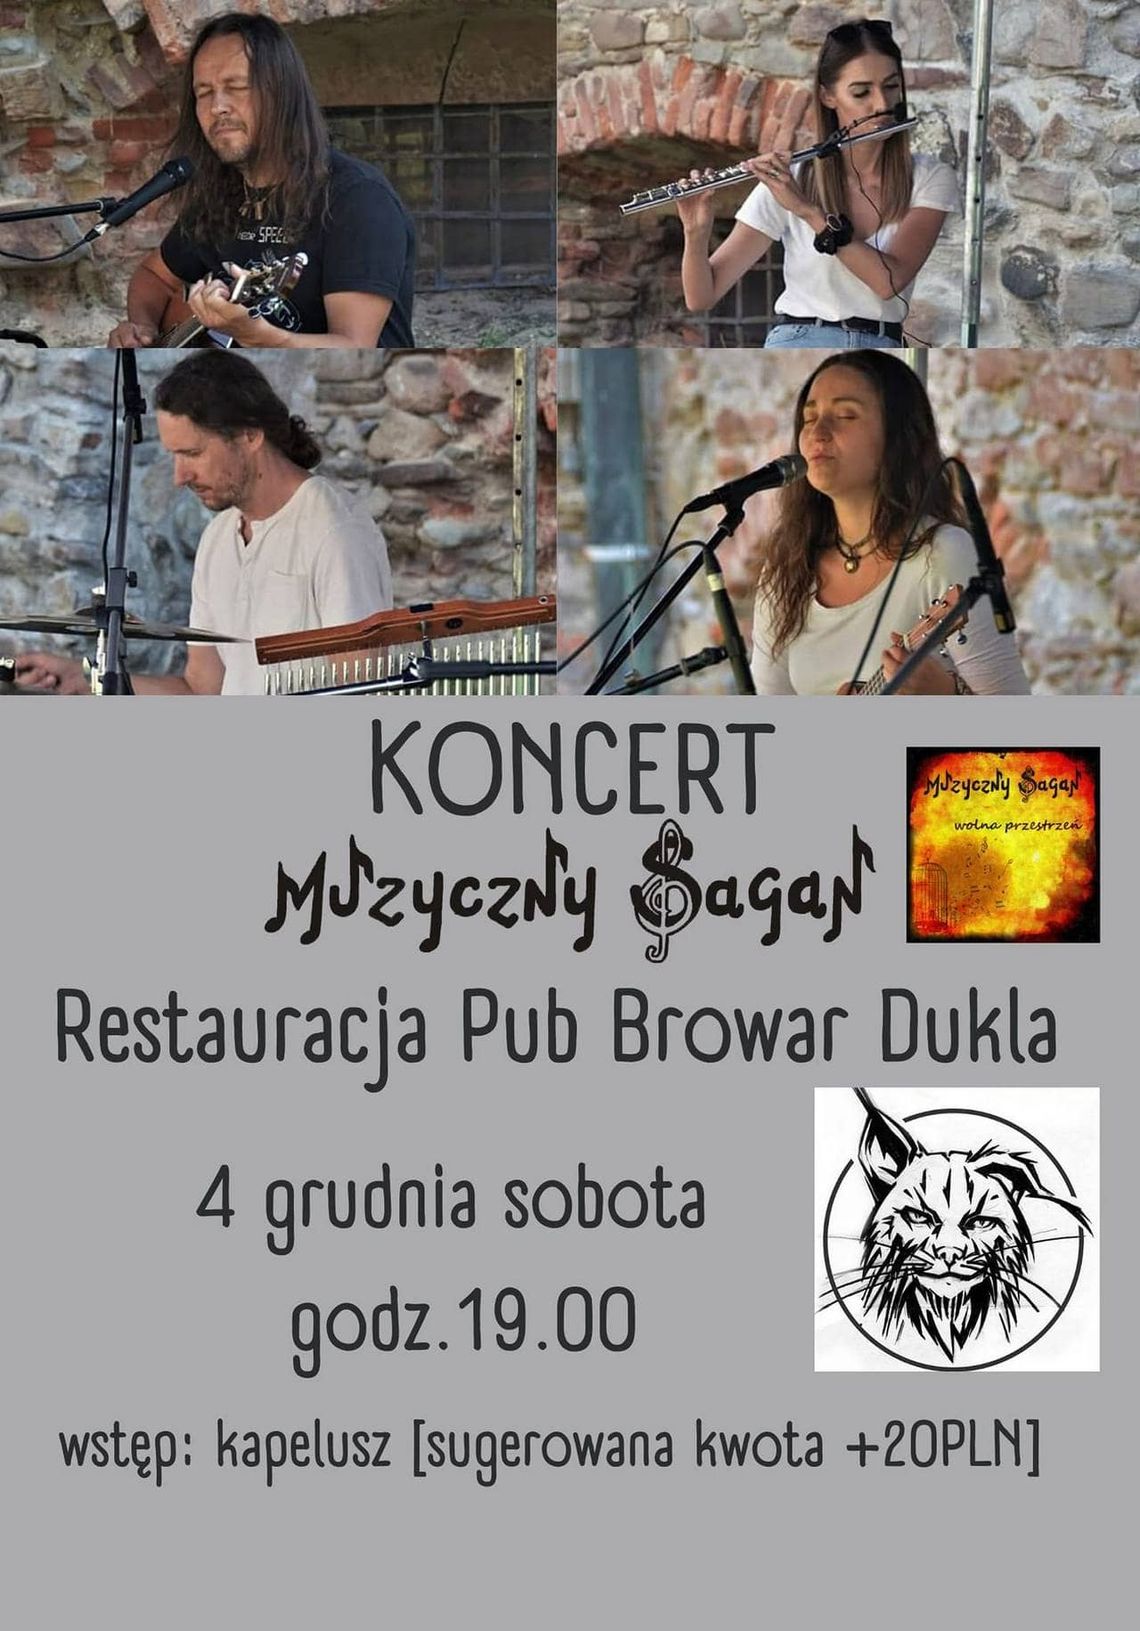 Koncert Muzyczny SAGAN w Browar Dukla | zapowiedzi imprez – halogorlice.info